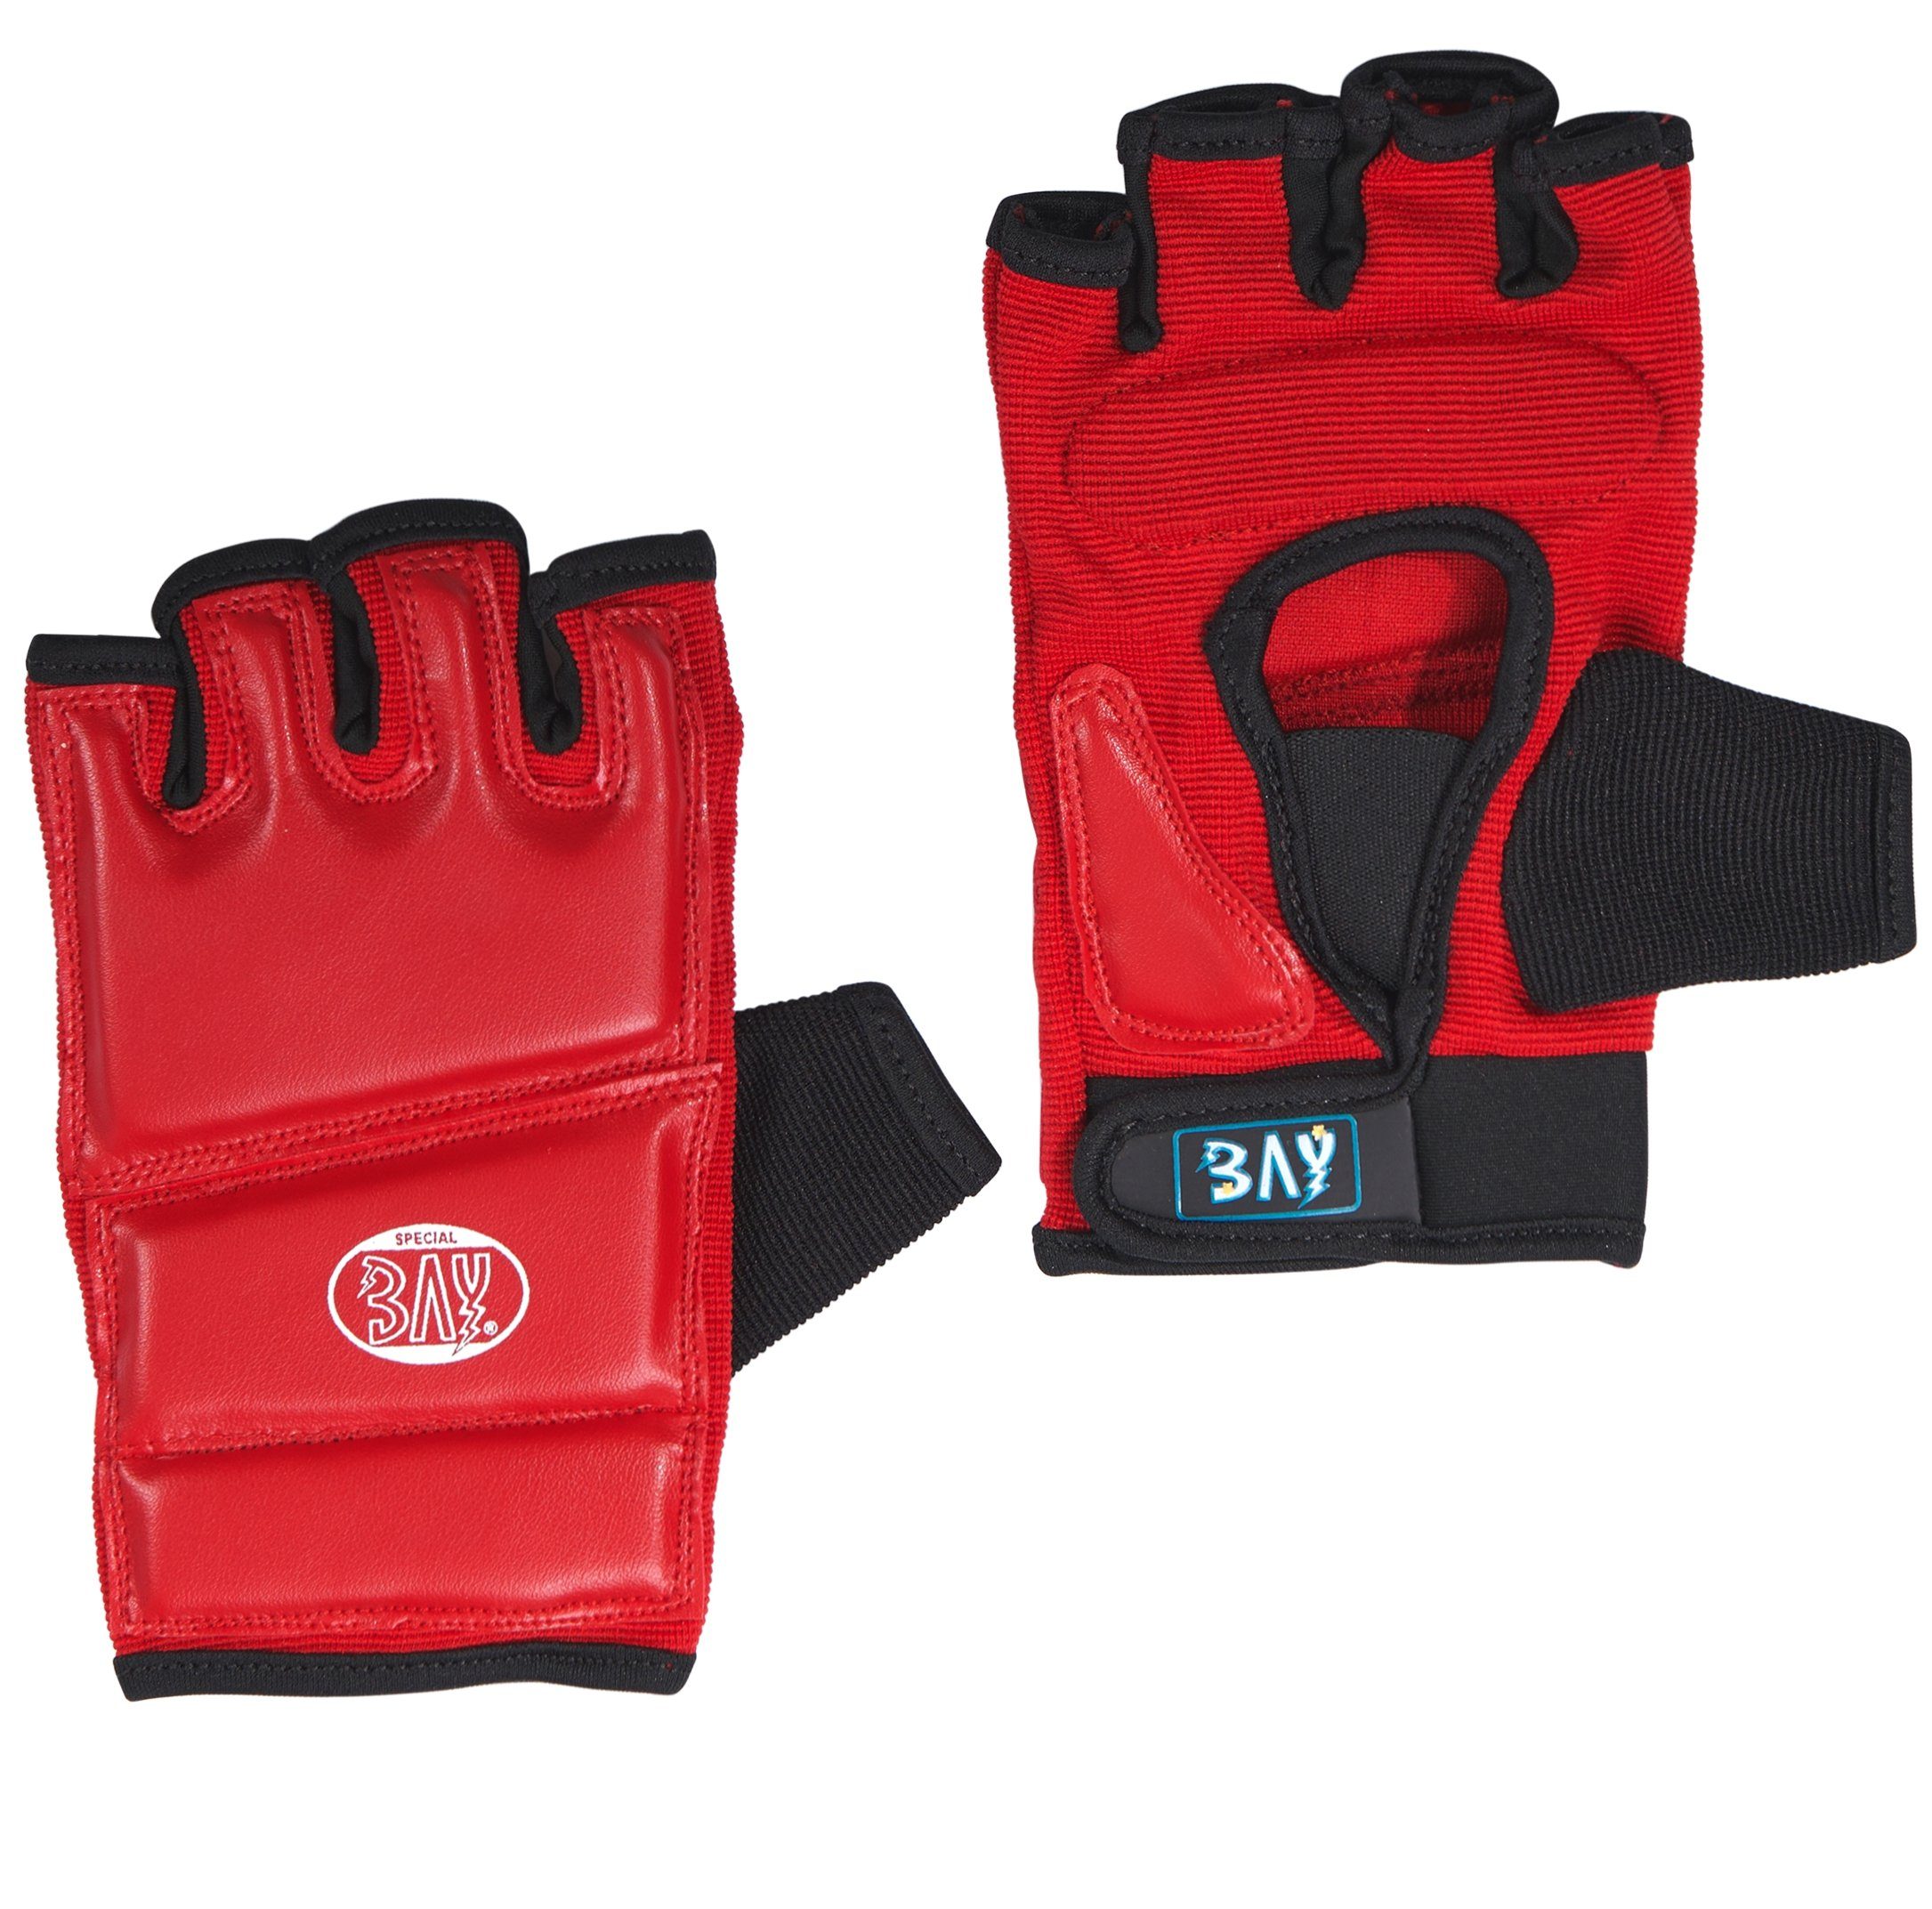 Kinder Sandsackhandschuhe - Sandsack Touch und rot, BAY-Sports Boxsack XS Boxhandschuhe Erwachsene Handschutz XXL